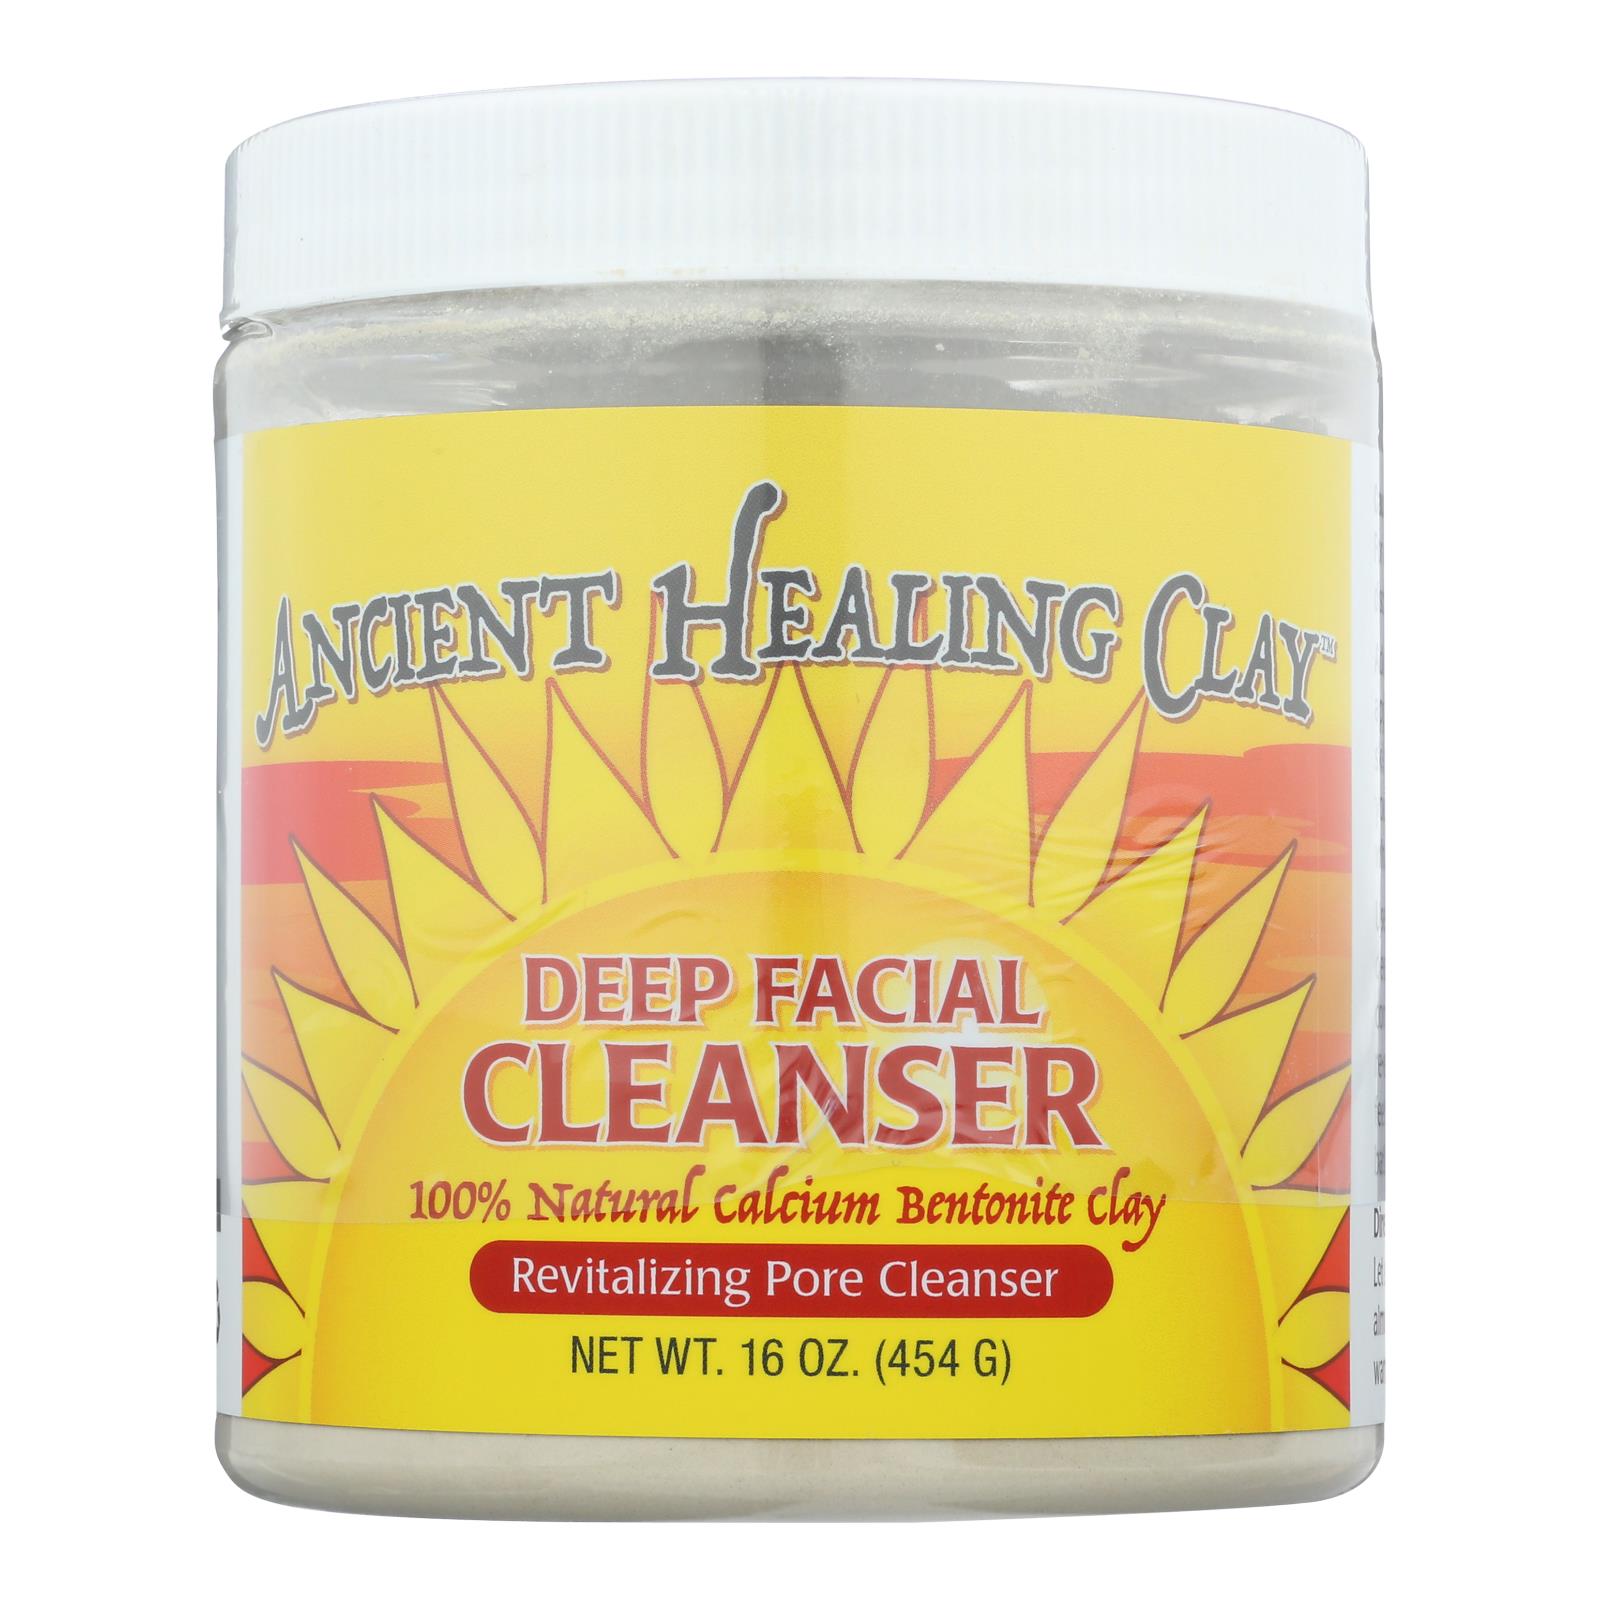 Ancient Healing Clay Deep Facial Cleanser - 1 Each - 16 OZ